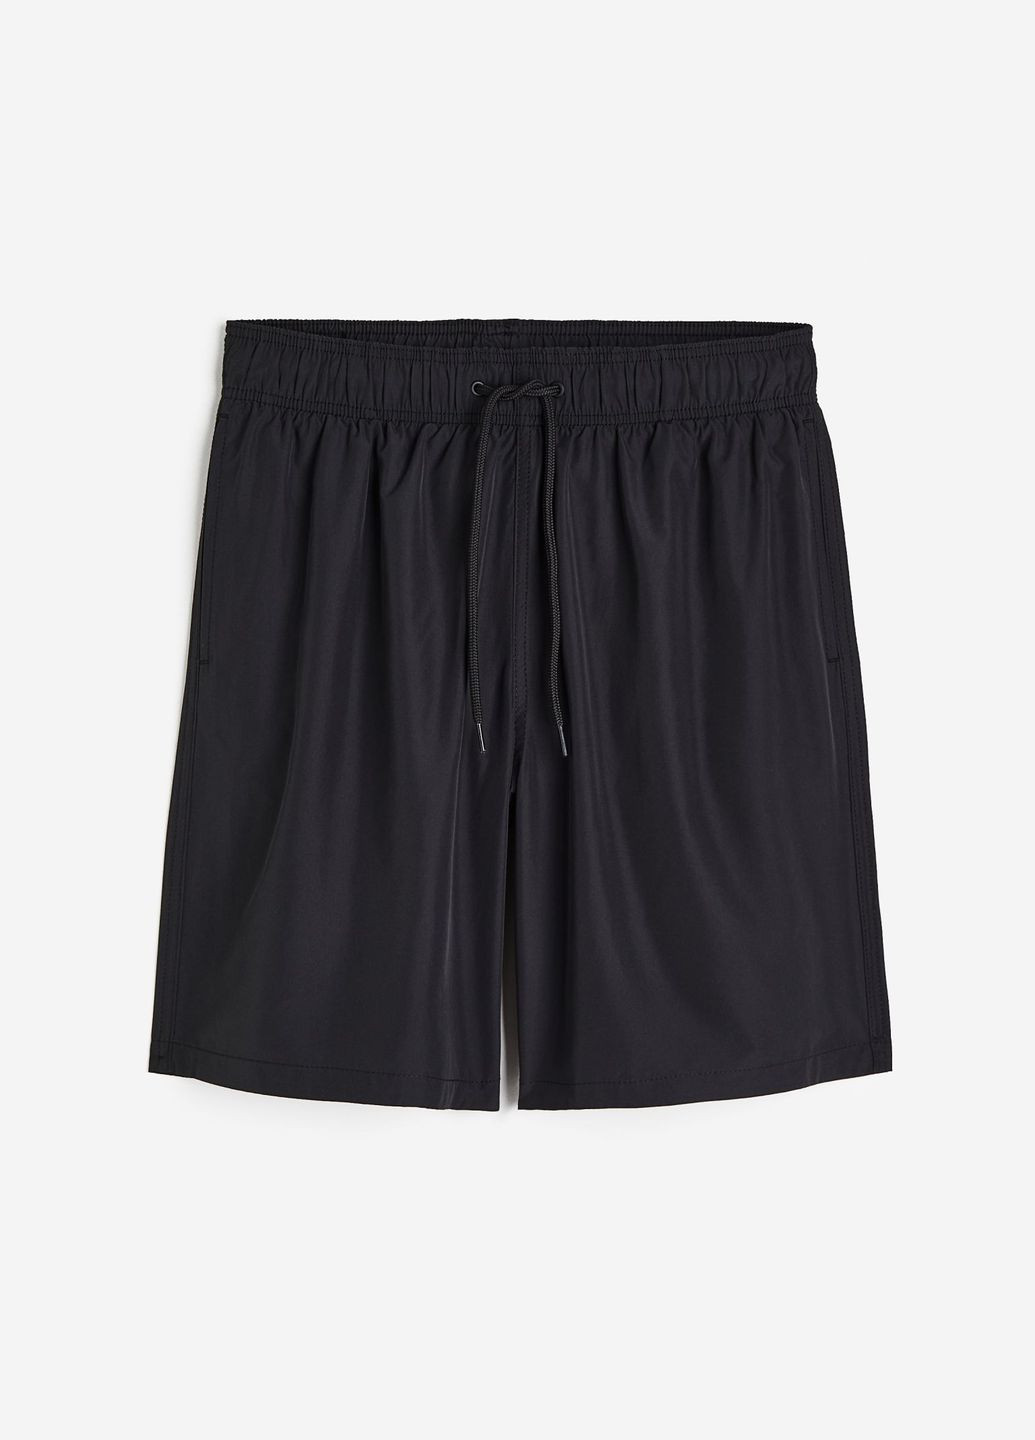 Мужские черные пляжные шорты для плаванья H&M